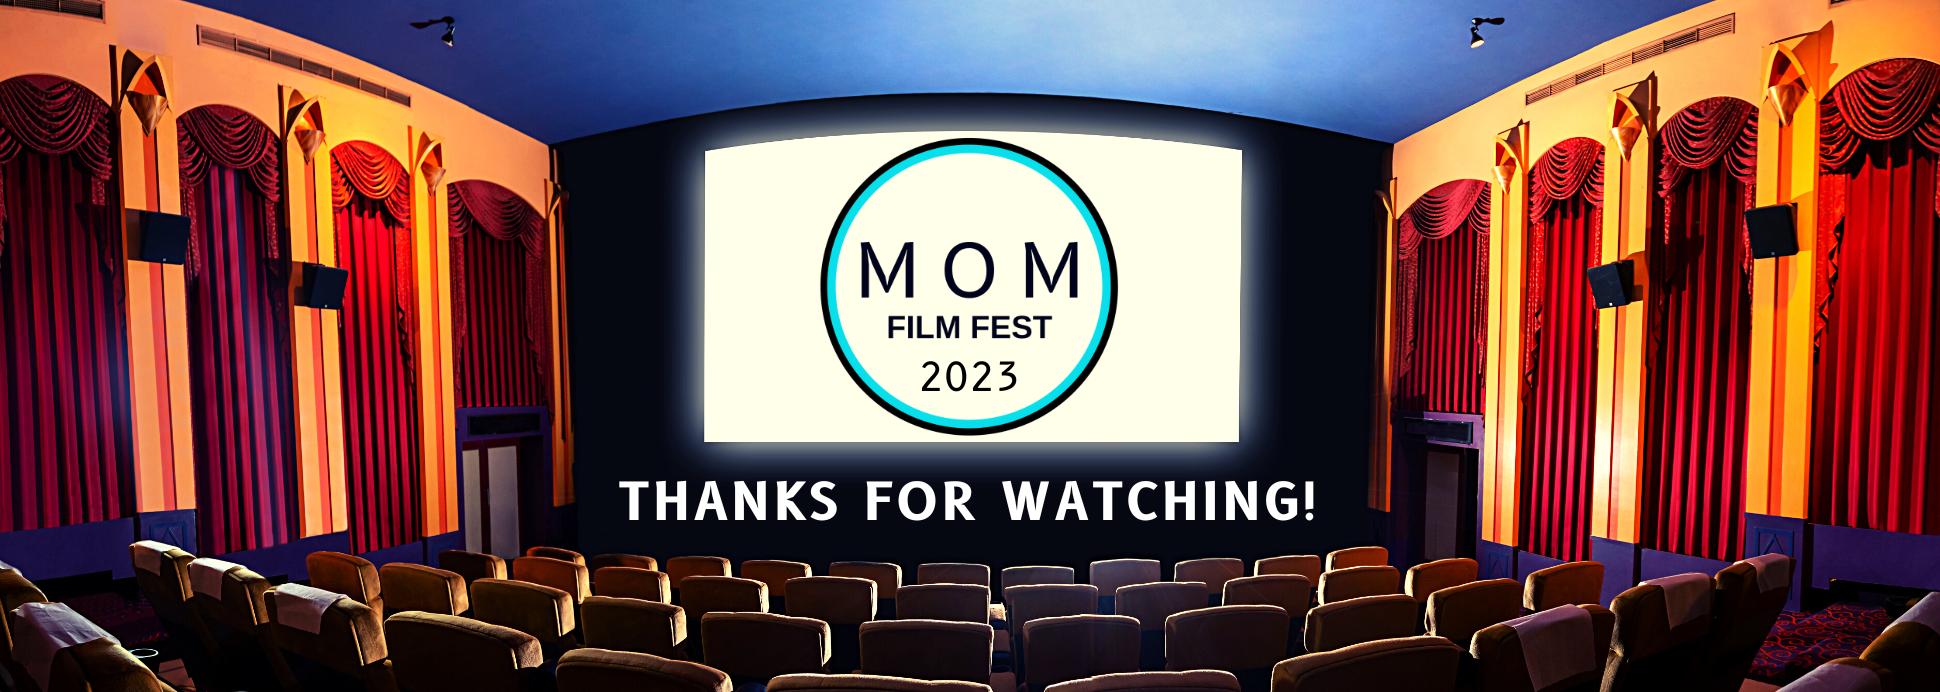 MOM Film Fest 2023